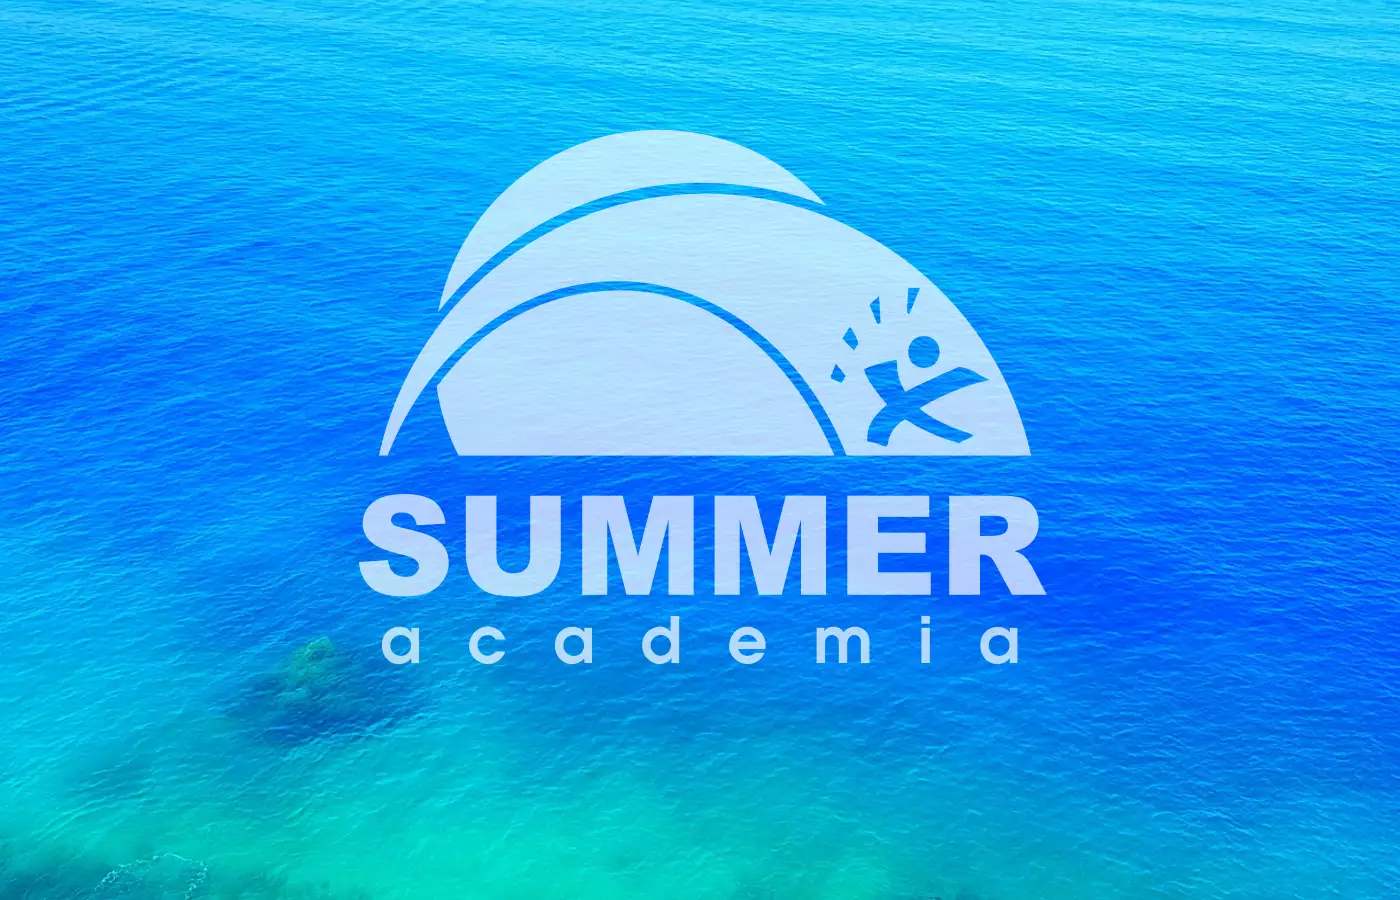 Logomarca Summer